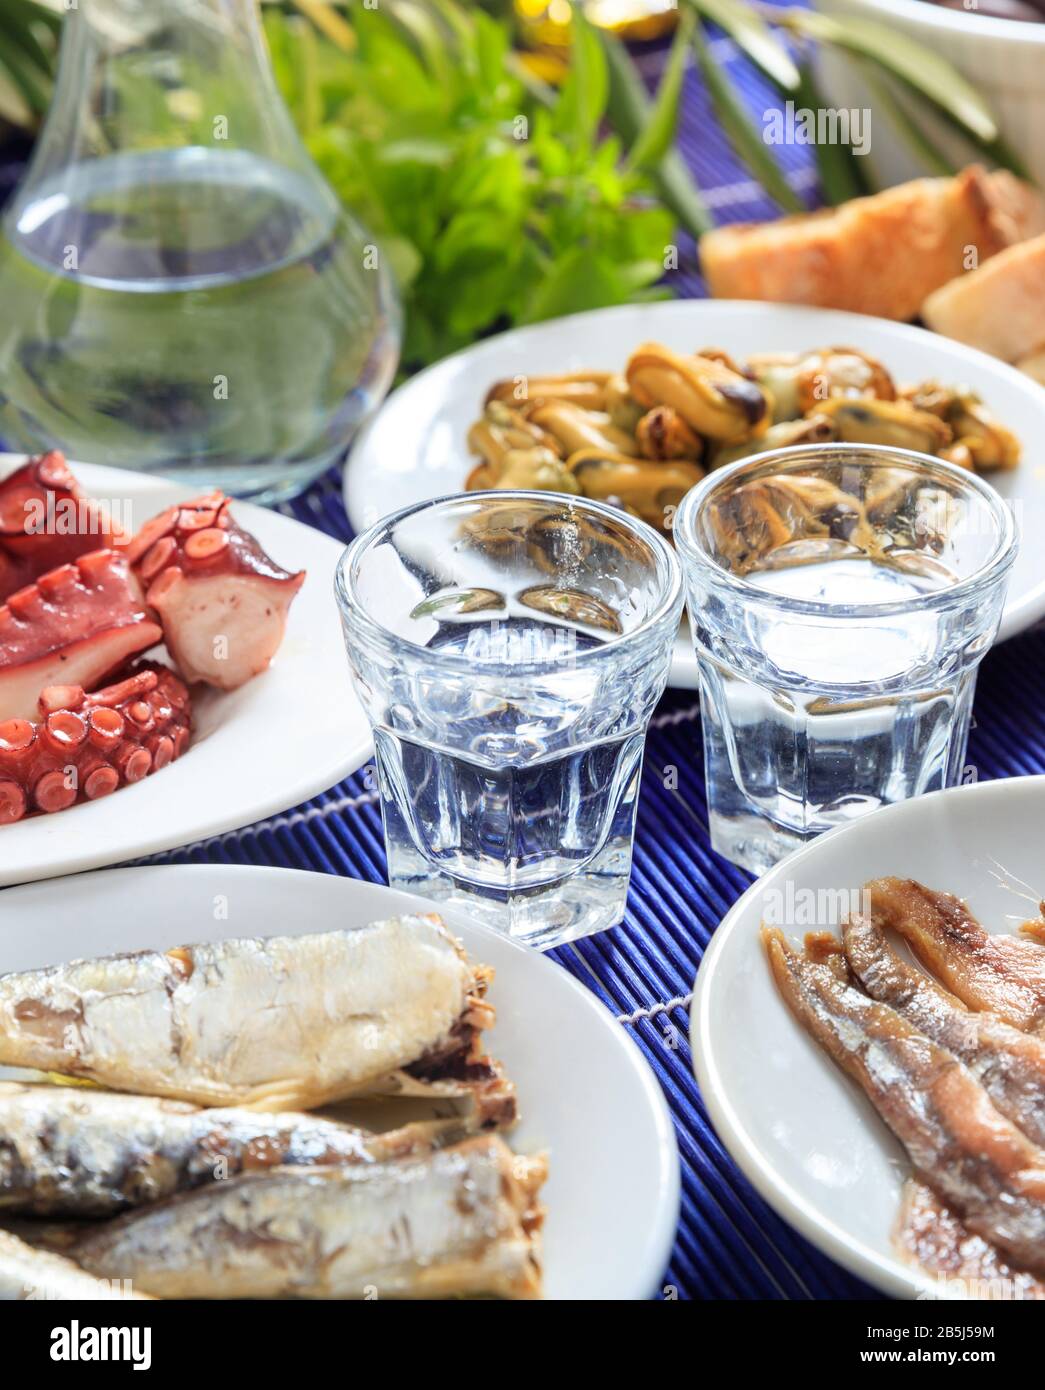 Ouzo, Raki-Alkohol mit Meeresfrüchte-Meze auf weißen Gerichten. Zwei Gläser und verschiedene gesunde Weichtiere Hintergrund. Nahansicht, vertikal. Stockfoto